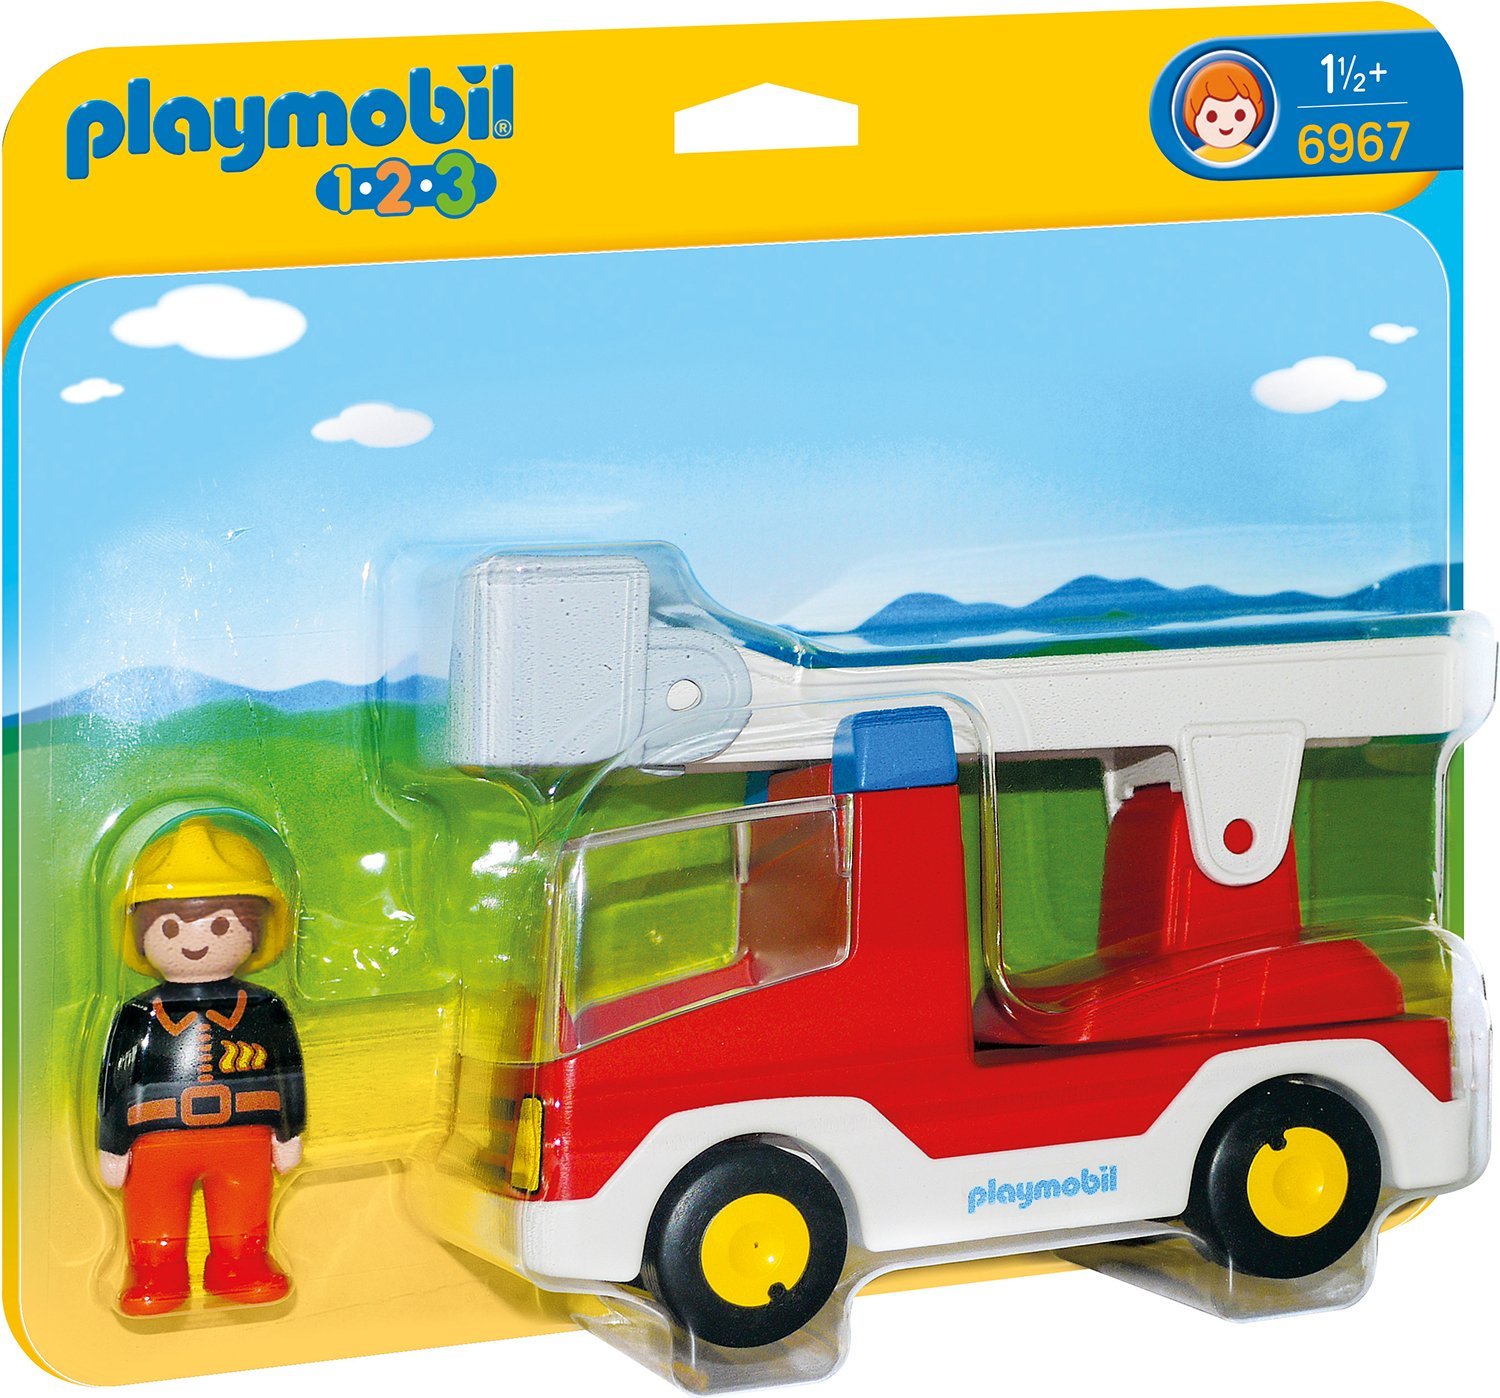 Playmobil Feuerwehrleiter vehicle - 6967 konstruktors